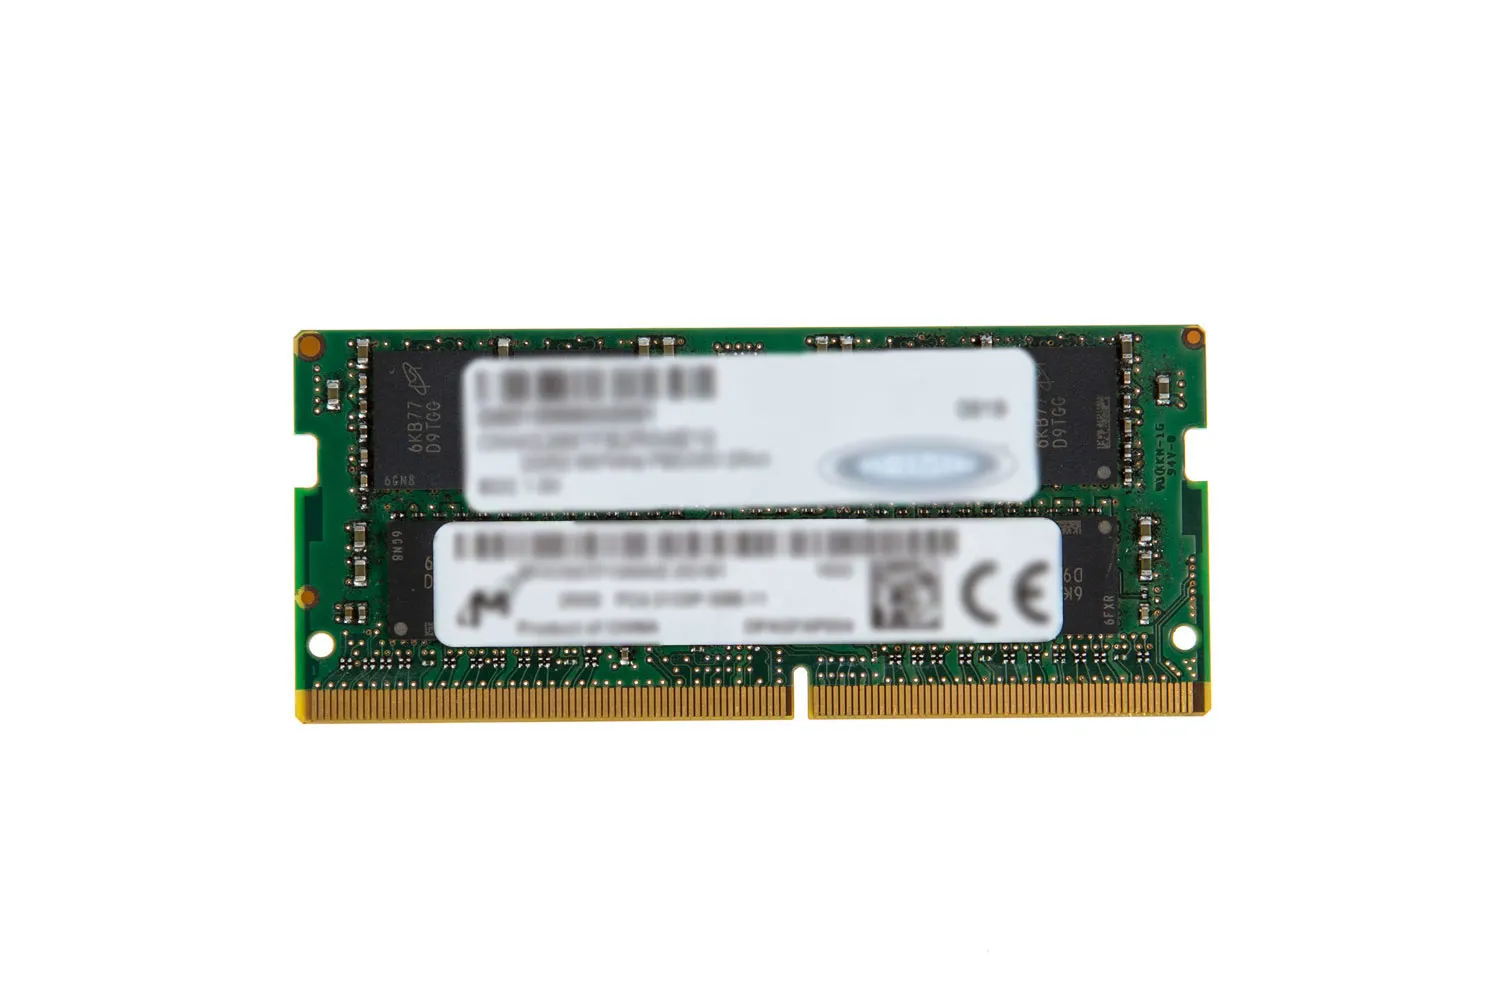 Achat Origin Storage Origin 4GB DDR4-2666 SODIMM memory - 5056006173274